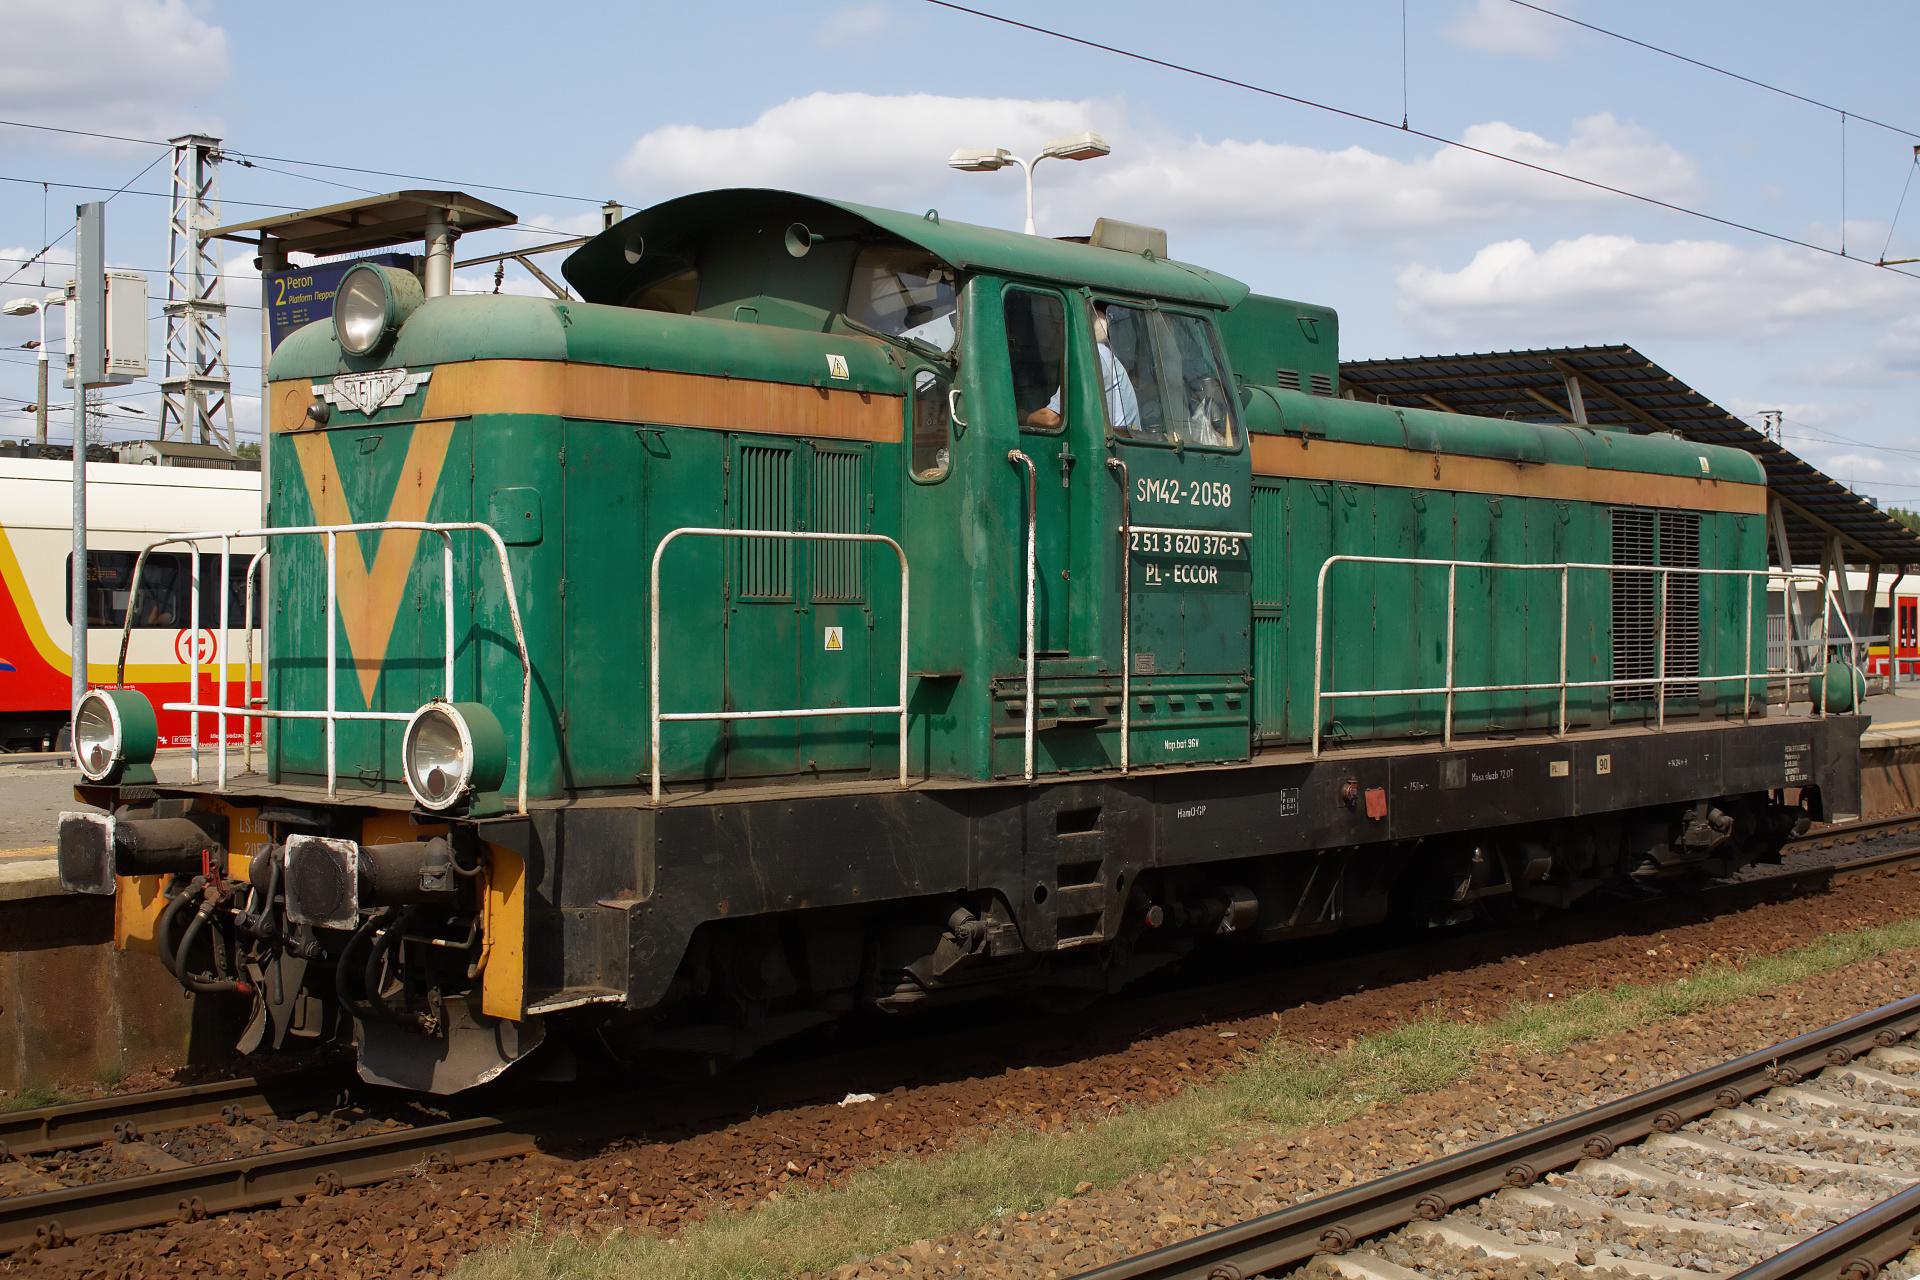 SM42-2058 (Vehicles » Trains and Locomotives » Fablok 6D)